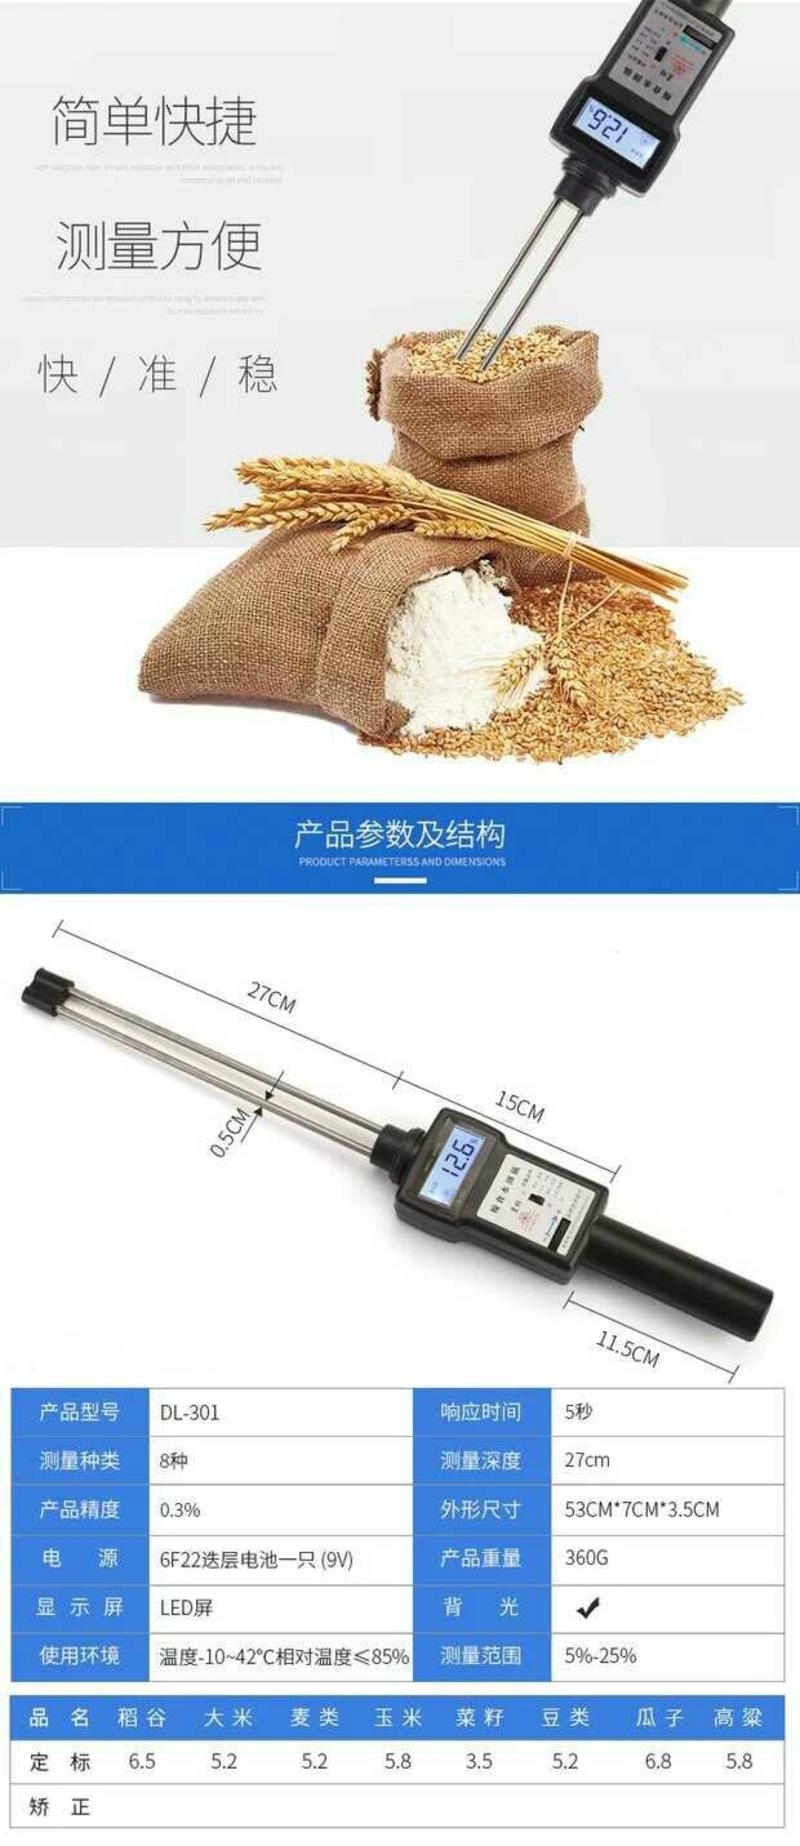 粮食测水仪稻谷玉米小麦水分测量仪高粱豆类含水率检测皇林水